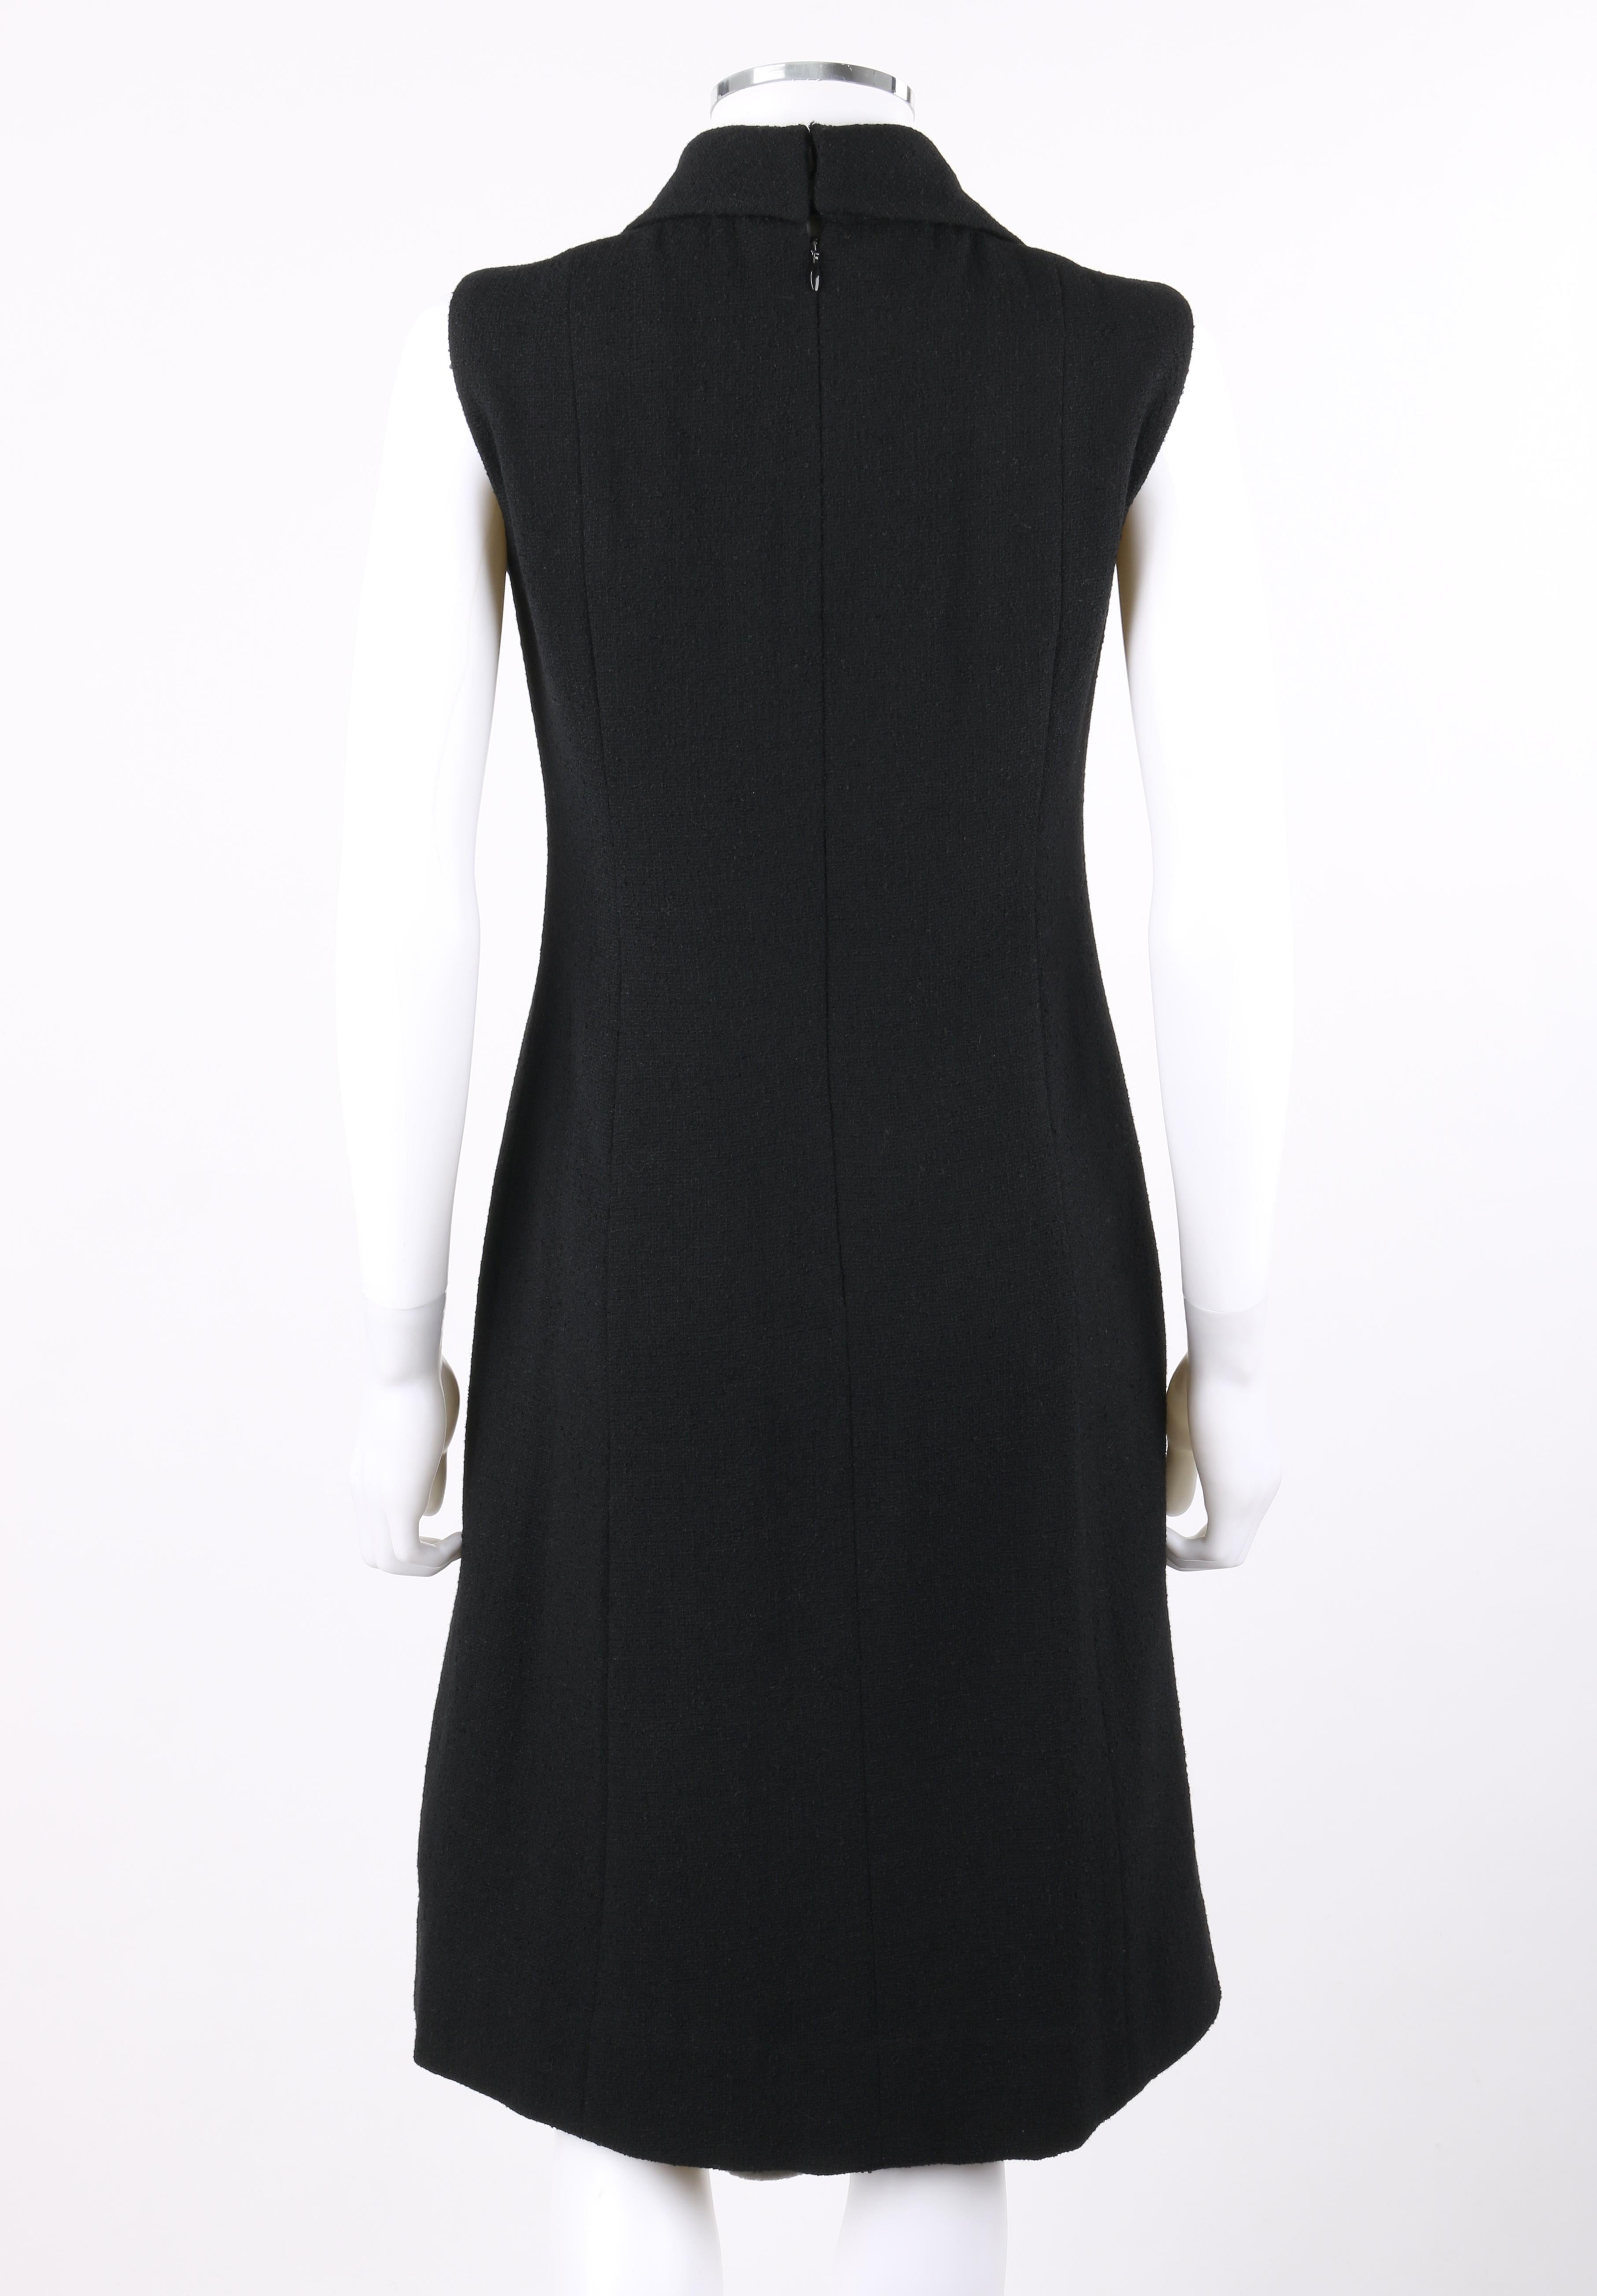 black sleeveless dress with jacket